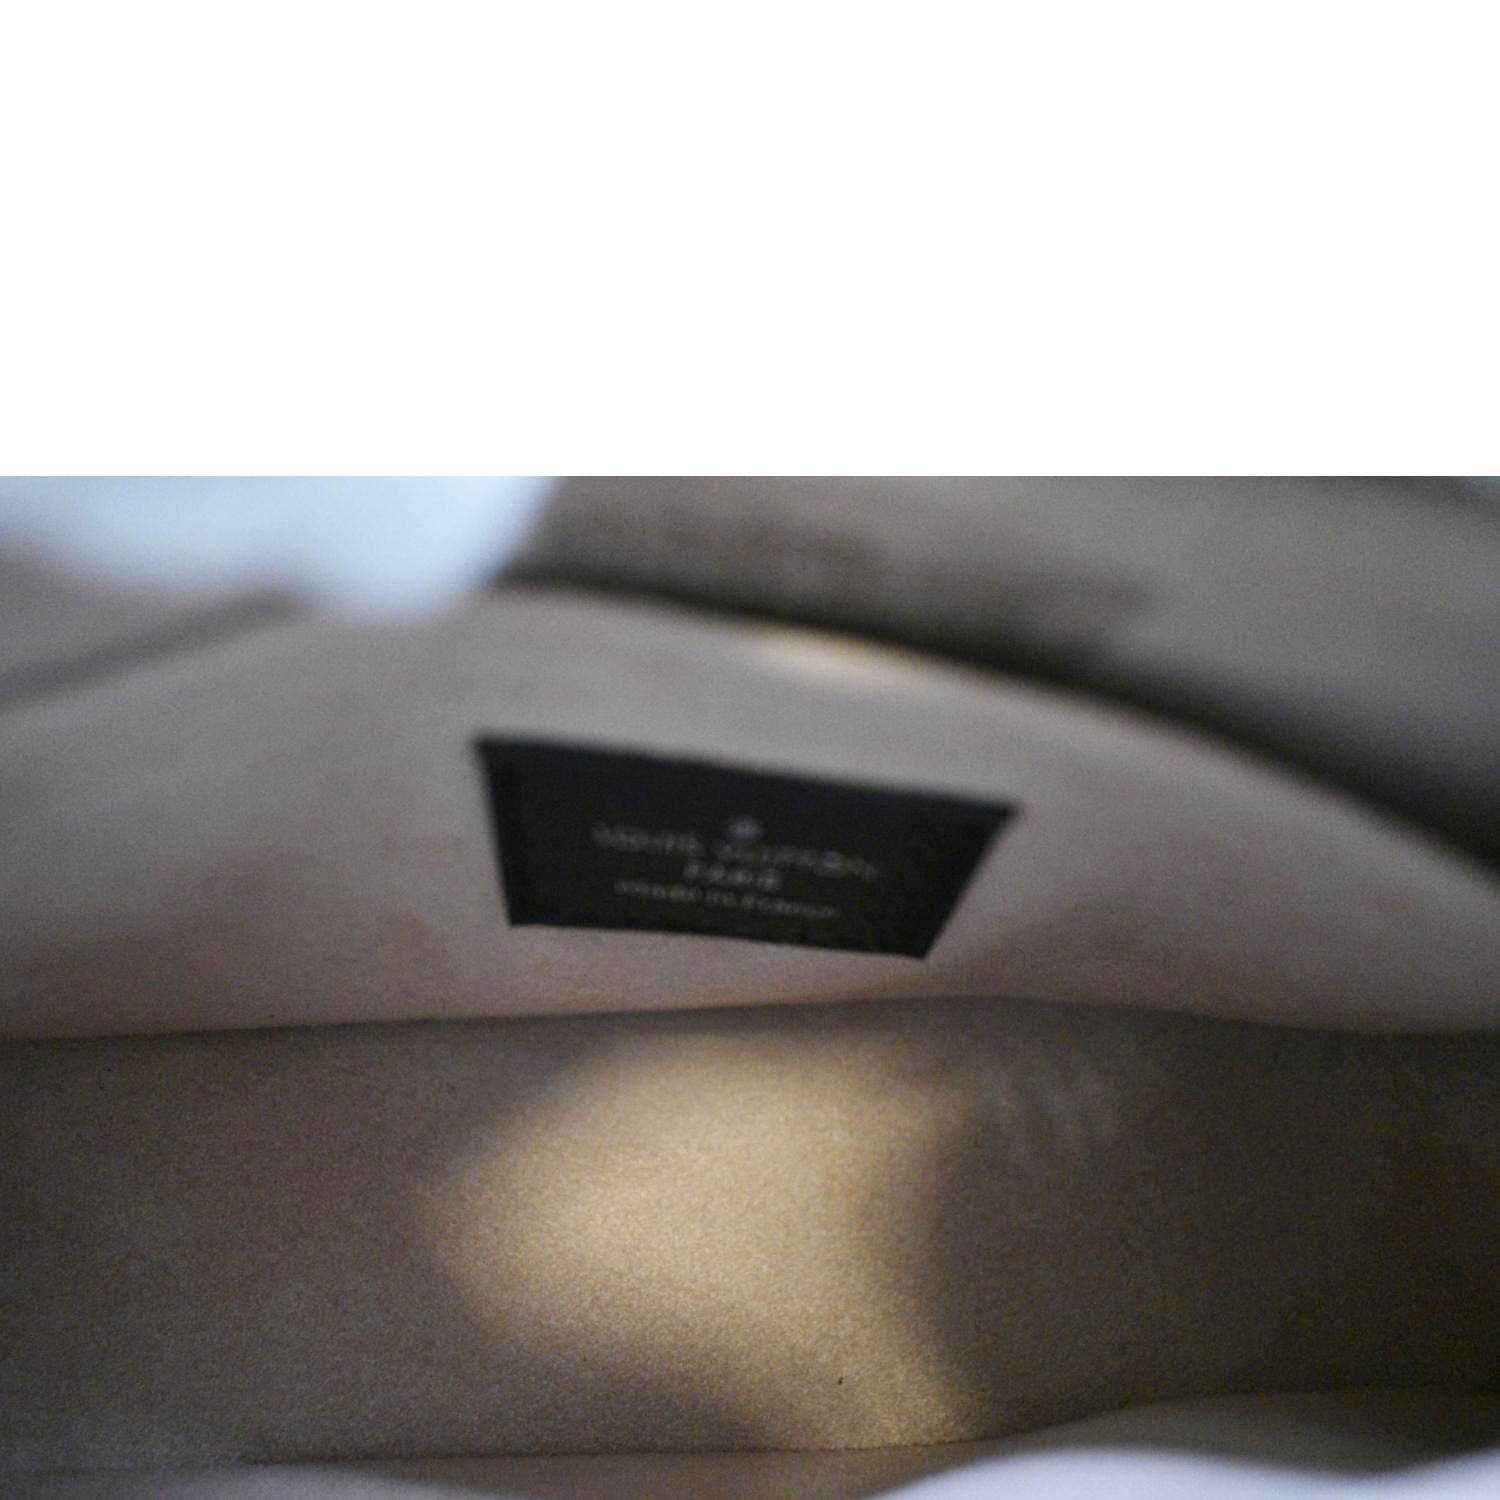 Louis Vuitton Marellini Bag - Vitkac shop online